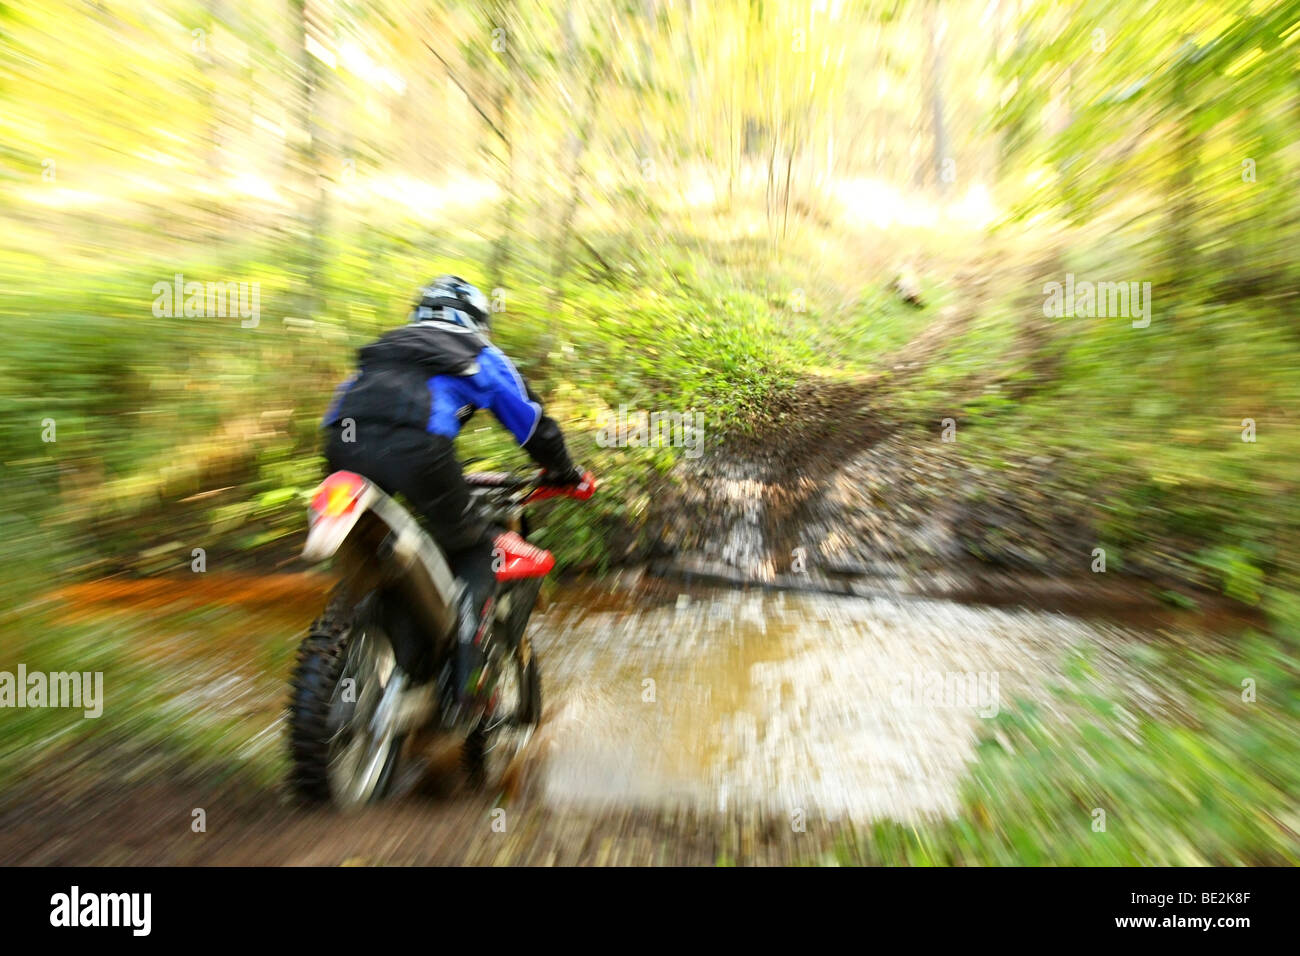 Moto hors route crossing river, les éclaboussures d'eau autour. Image dynamique avec effet de flou. Banque D'Images